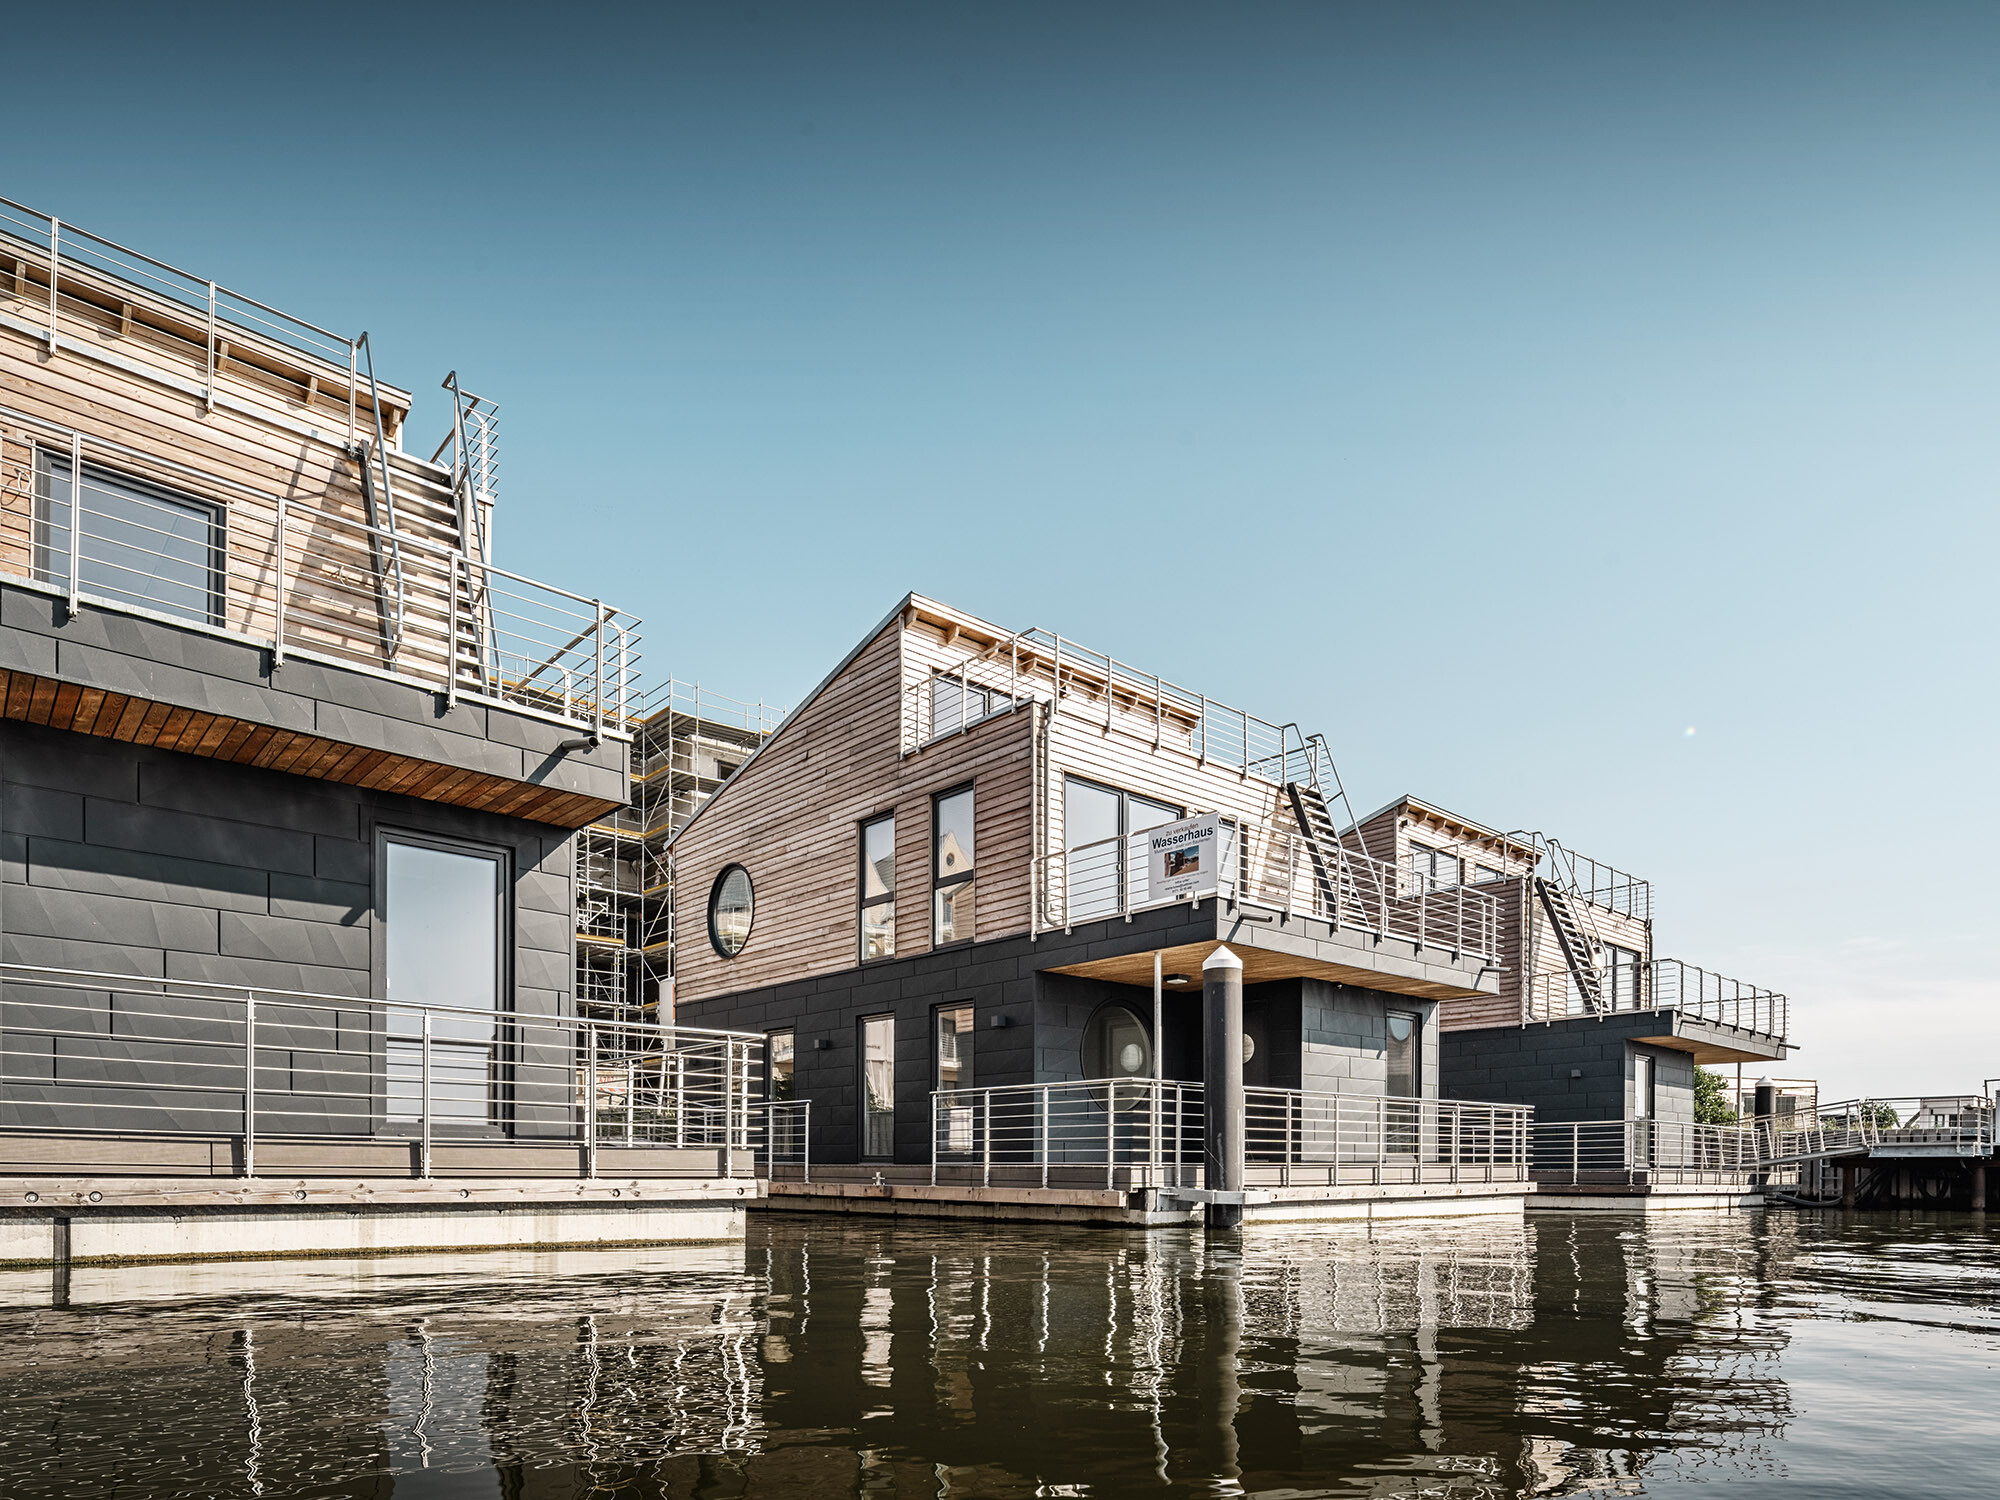 Les maisons aquatiques de Schleswig en contre-plongée, avec une séparation apparente grâce à leur façade en bois et en aluminium.